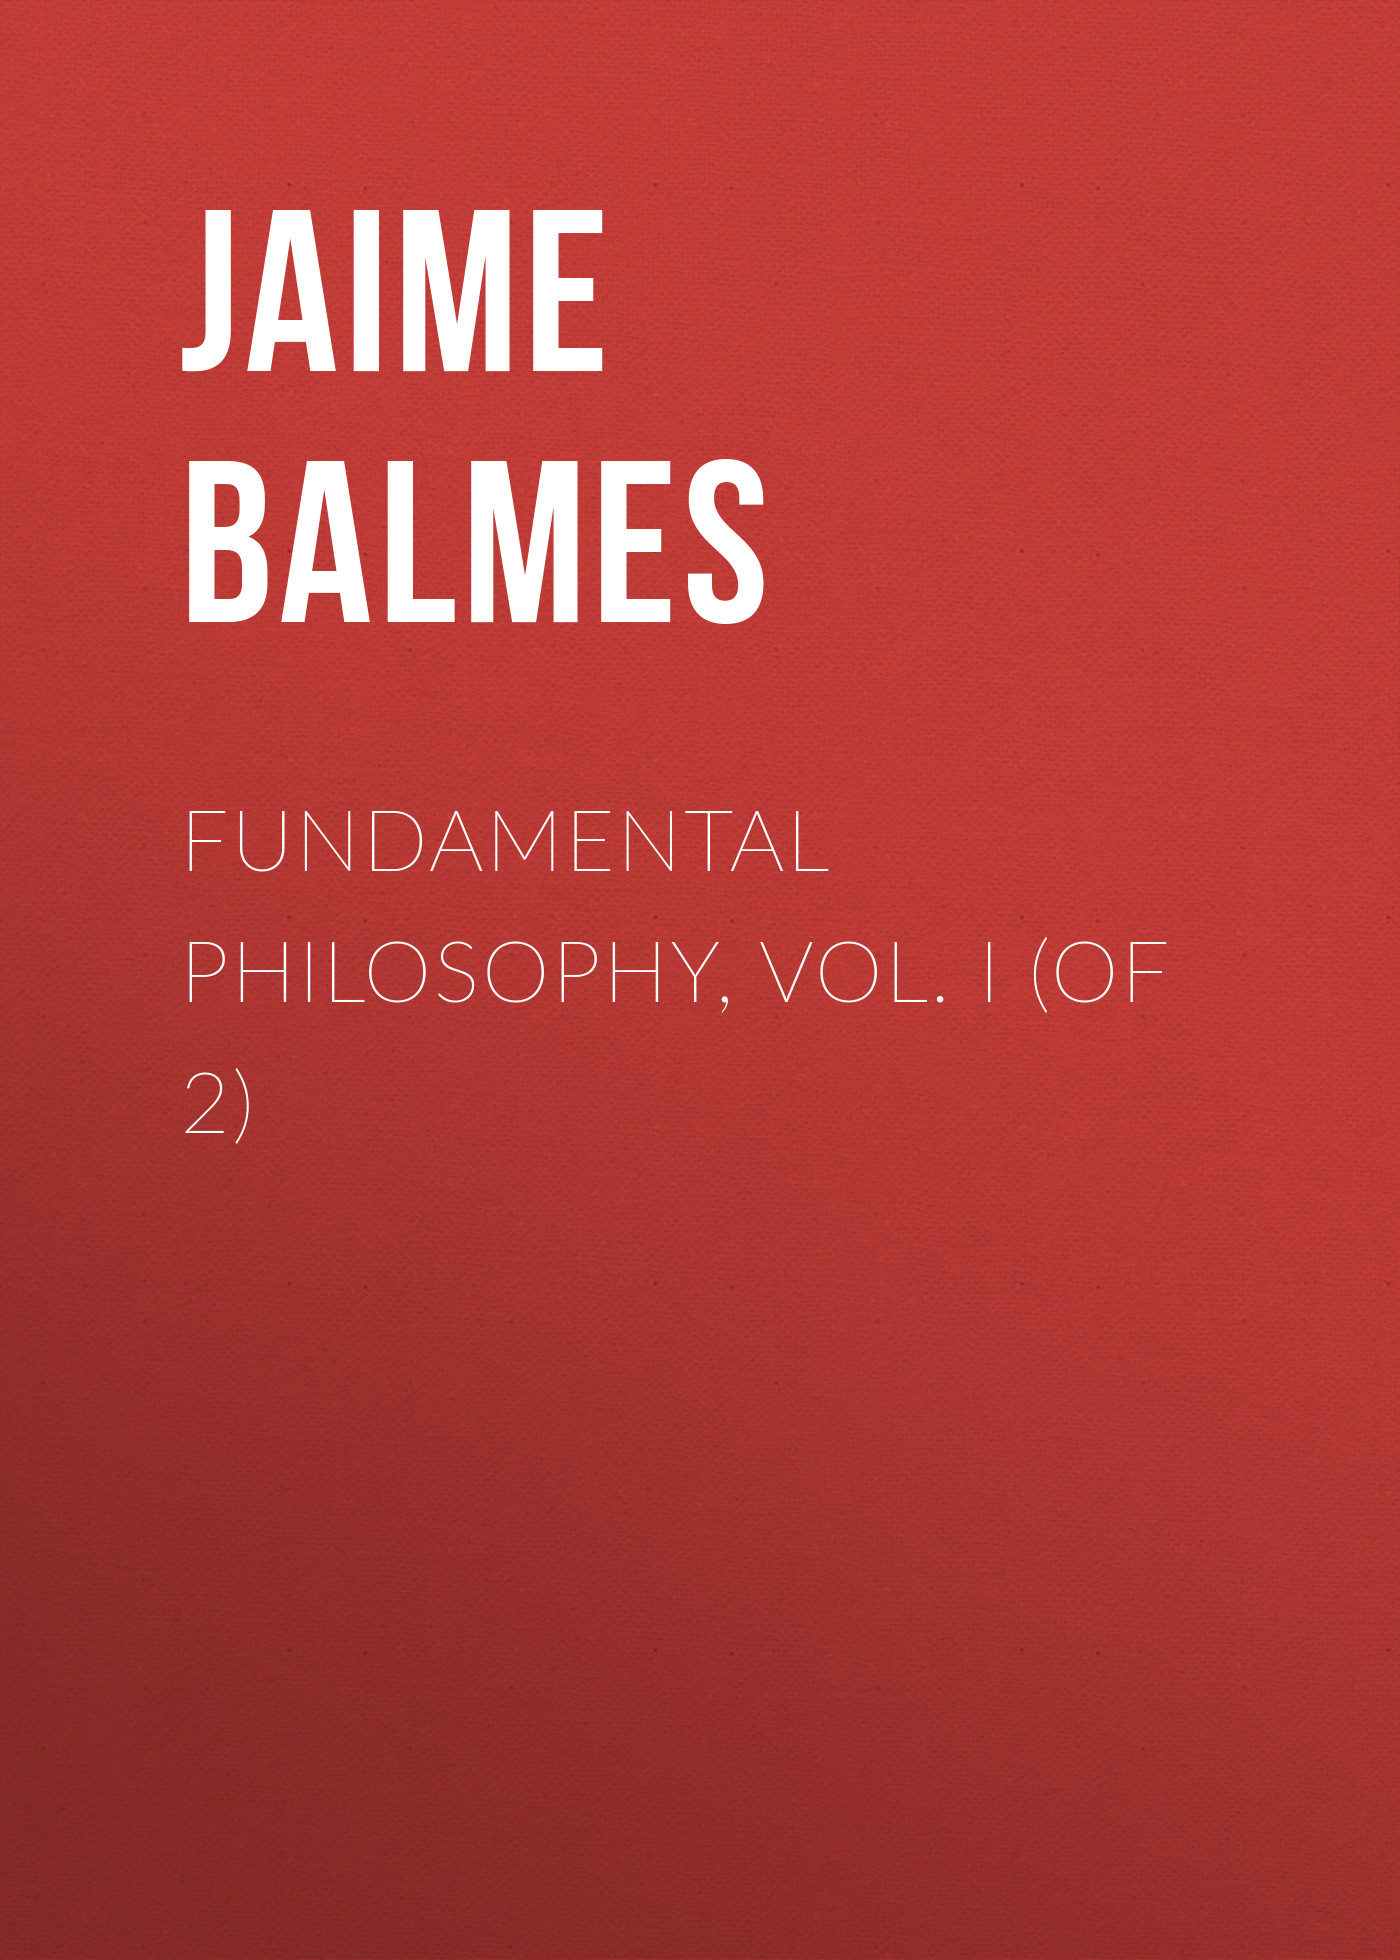 Книга Fundamental Philosophy, Vol. I (of 2) из серии , созданная Jaime Balmes, может относится к жанру Зарубежная старинная литература, Зарубежная классика. Стоимость электронной книги Fundamental Philosophy, Vol. I (of 2) с идентификатором 24167700 составляет 0 руб.